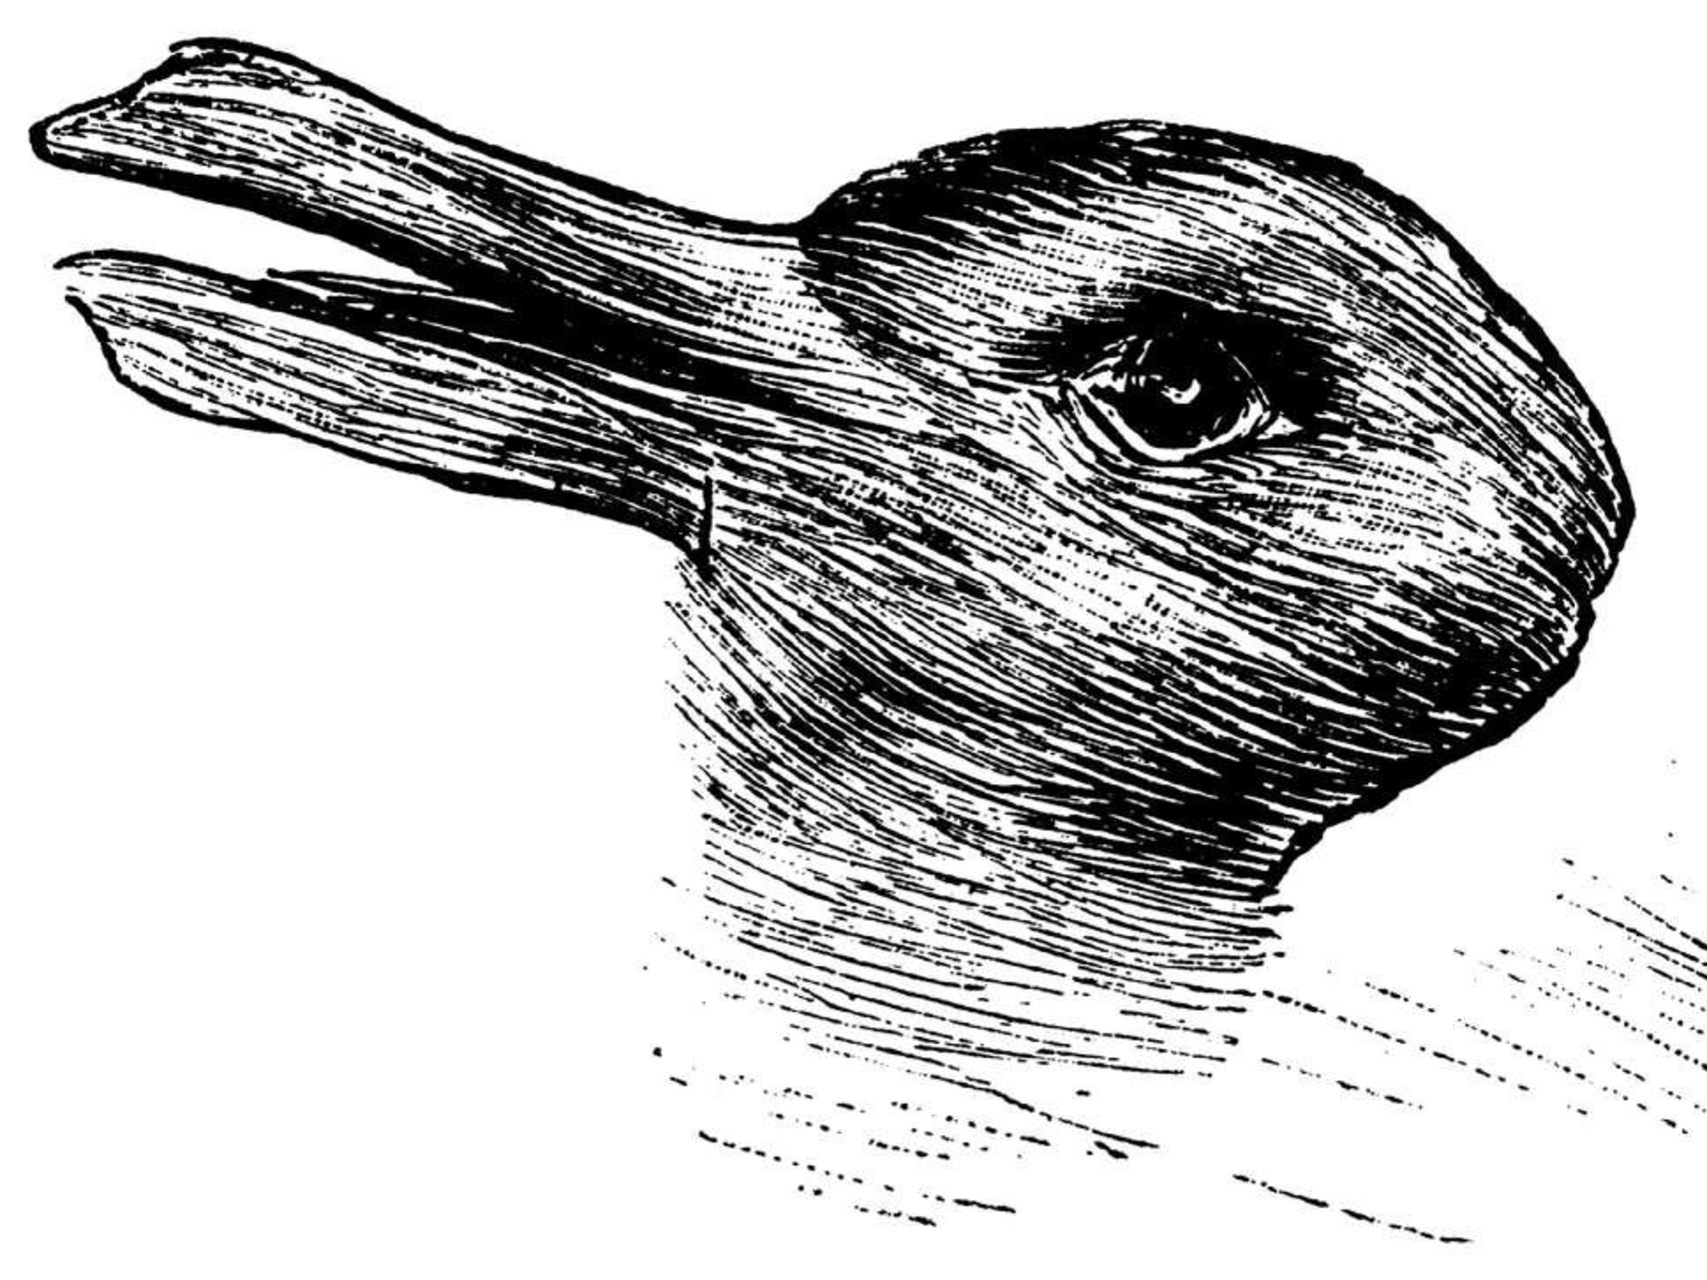 ChatGPT: l’illusione ottica creata dallo psicologo Joseph Jastrow nel 1892 è stata oggetto di molte riflessioni filosofiche e ancora fa discutere: a seconda del punto di vista, si può vedere un’anatra o un coniglio